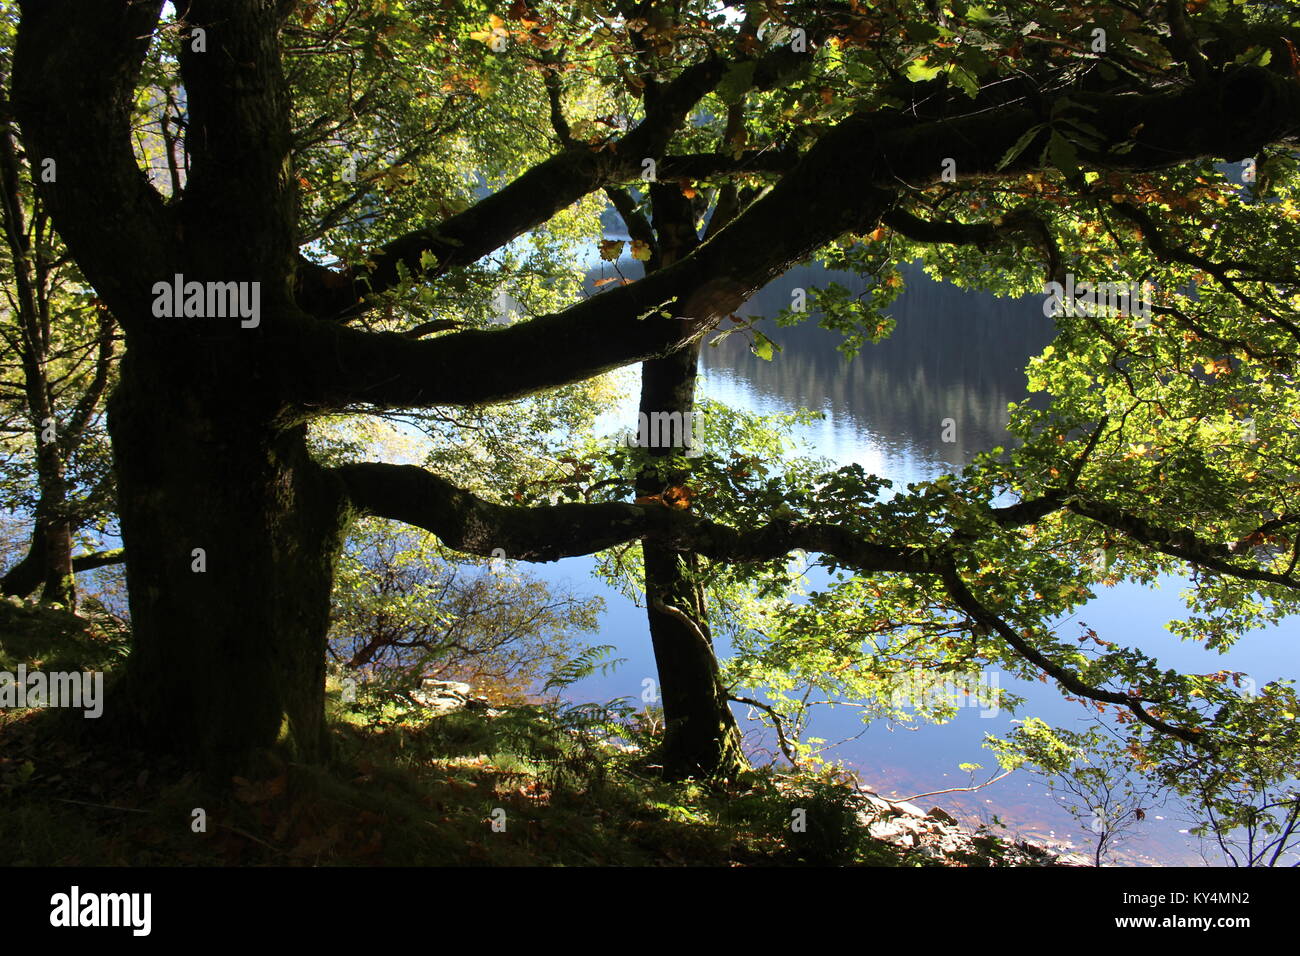 La silhouette des arbres dans le soleil d'octobre avec de l'eau derrière, Garreg Ddu Elan Valley réservoir, Powys, Pays de Galles, prises depuis le sentier le long du réservoir Banque D'Images